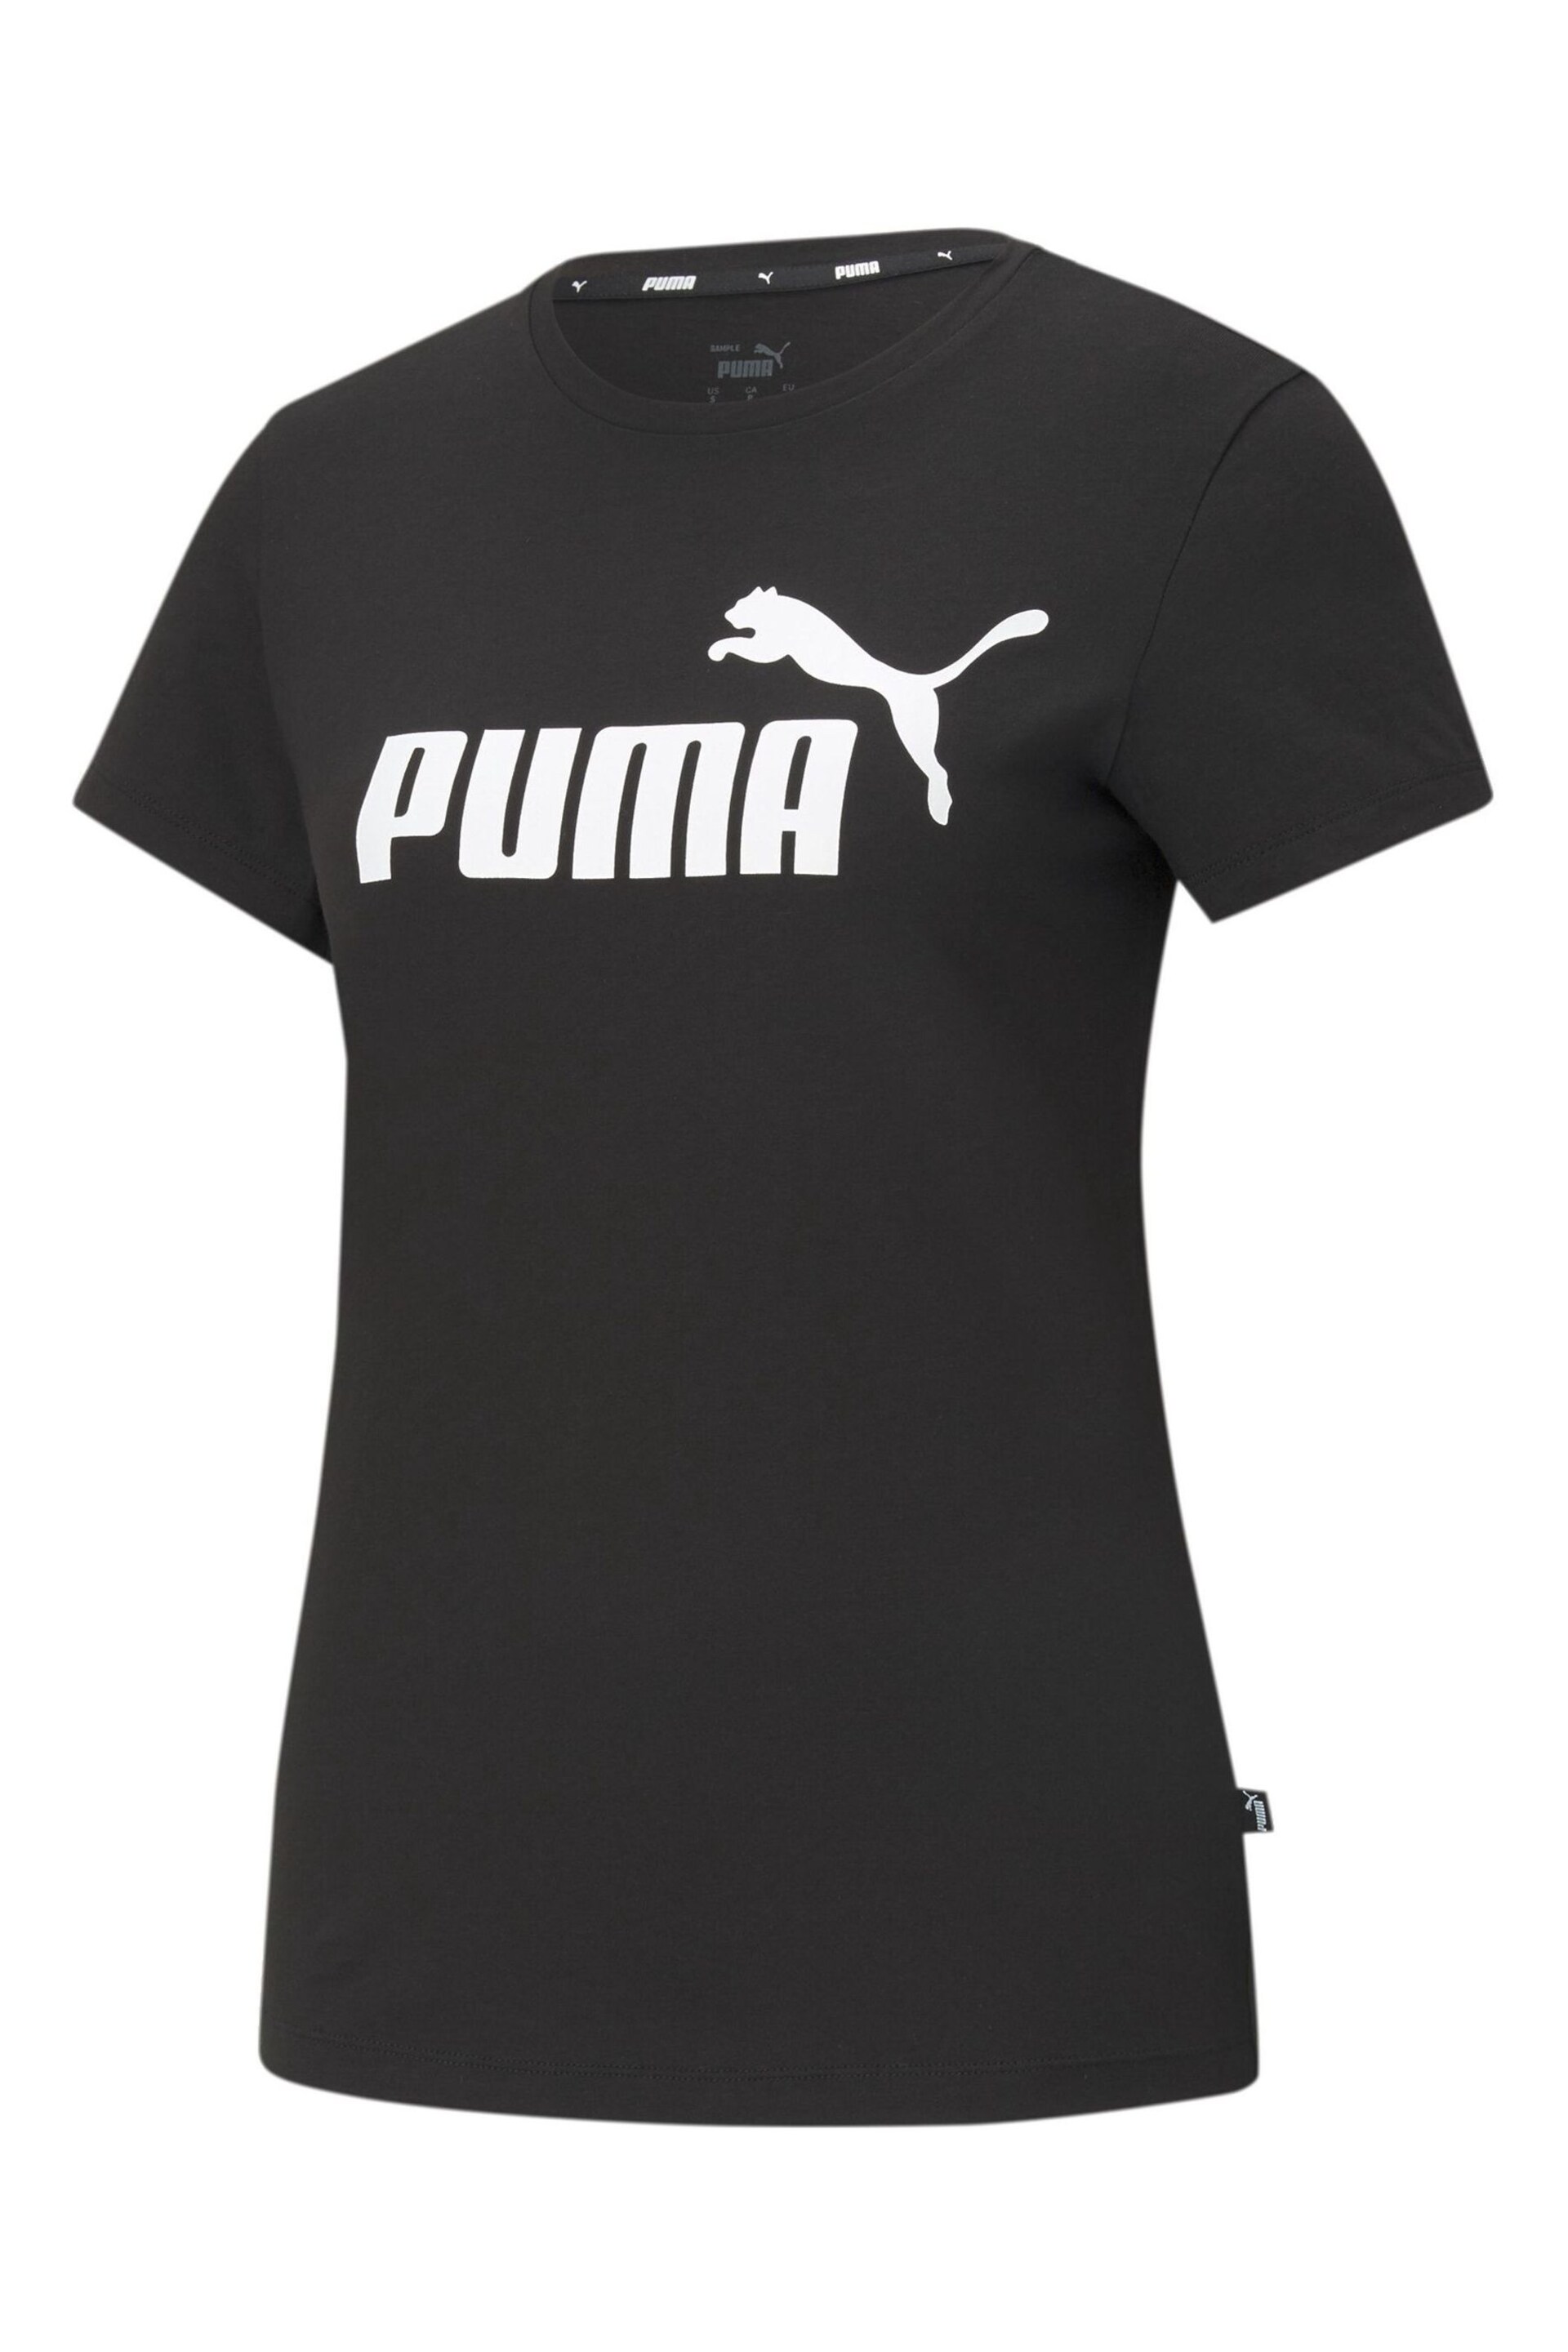 Puma Black ESS Logo T-Shirt - Image 6 of 7